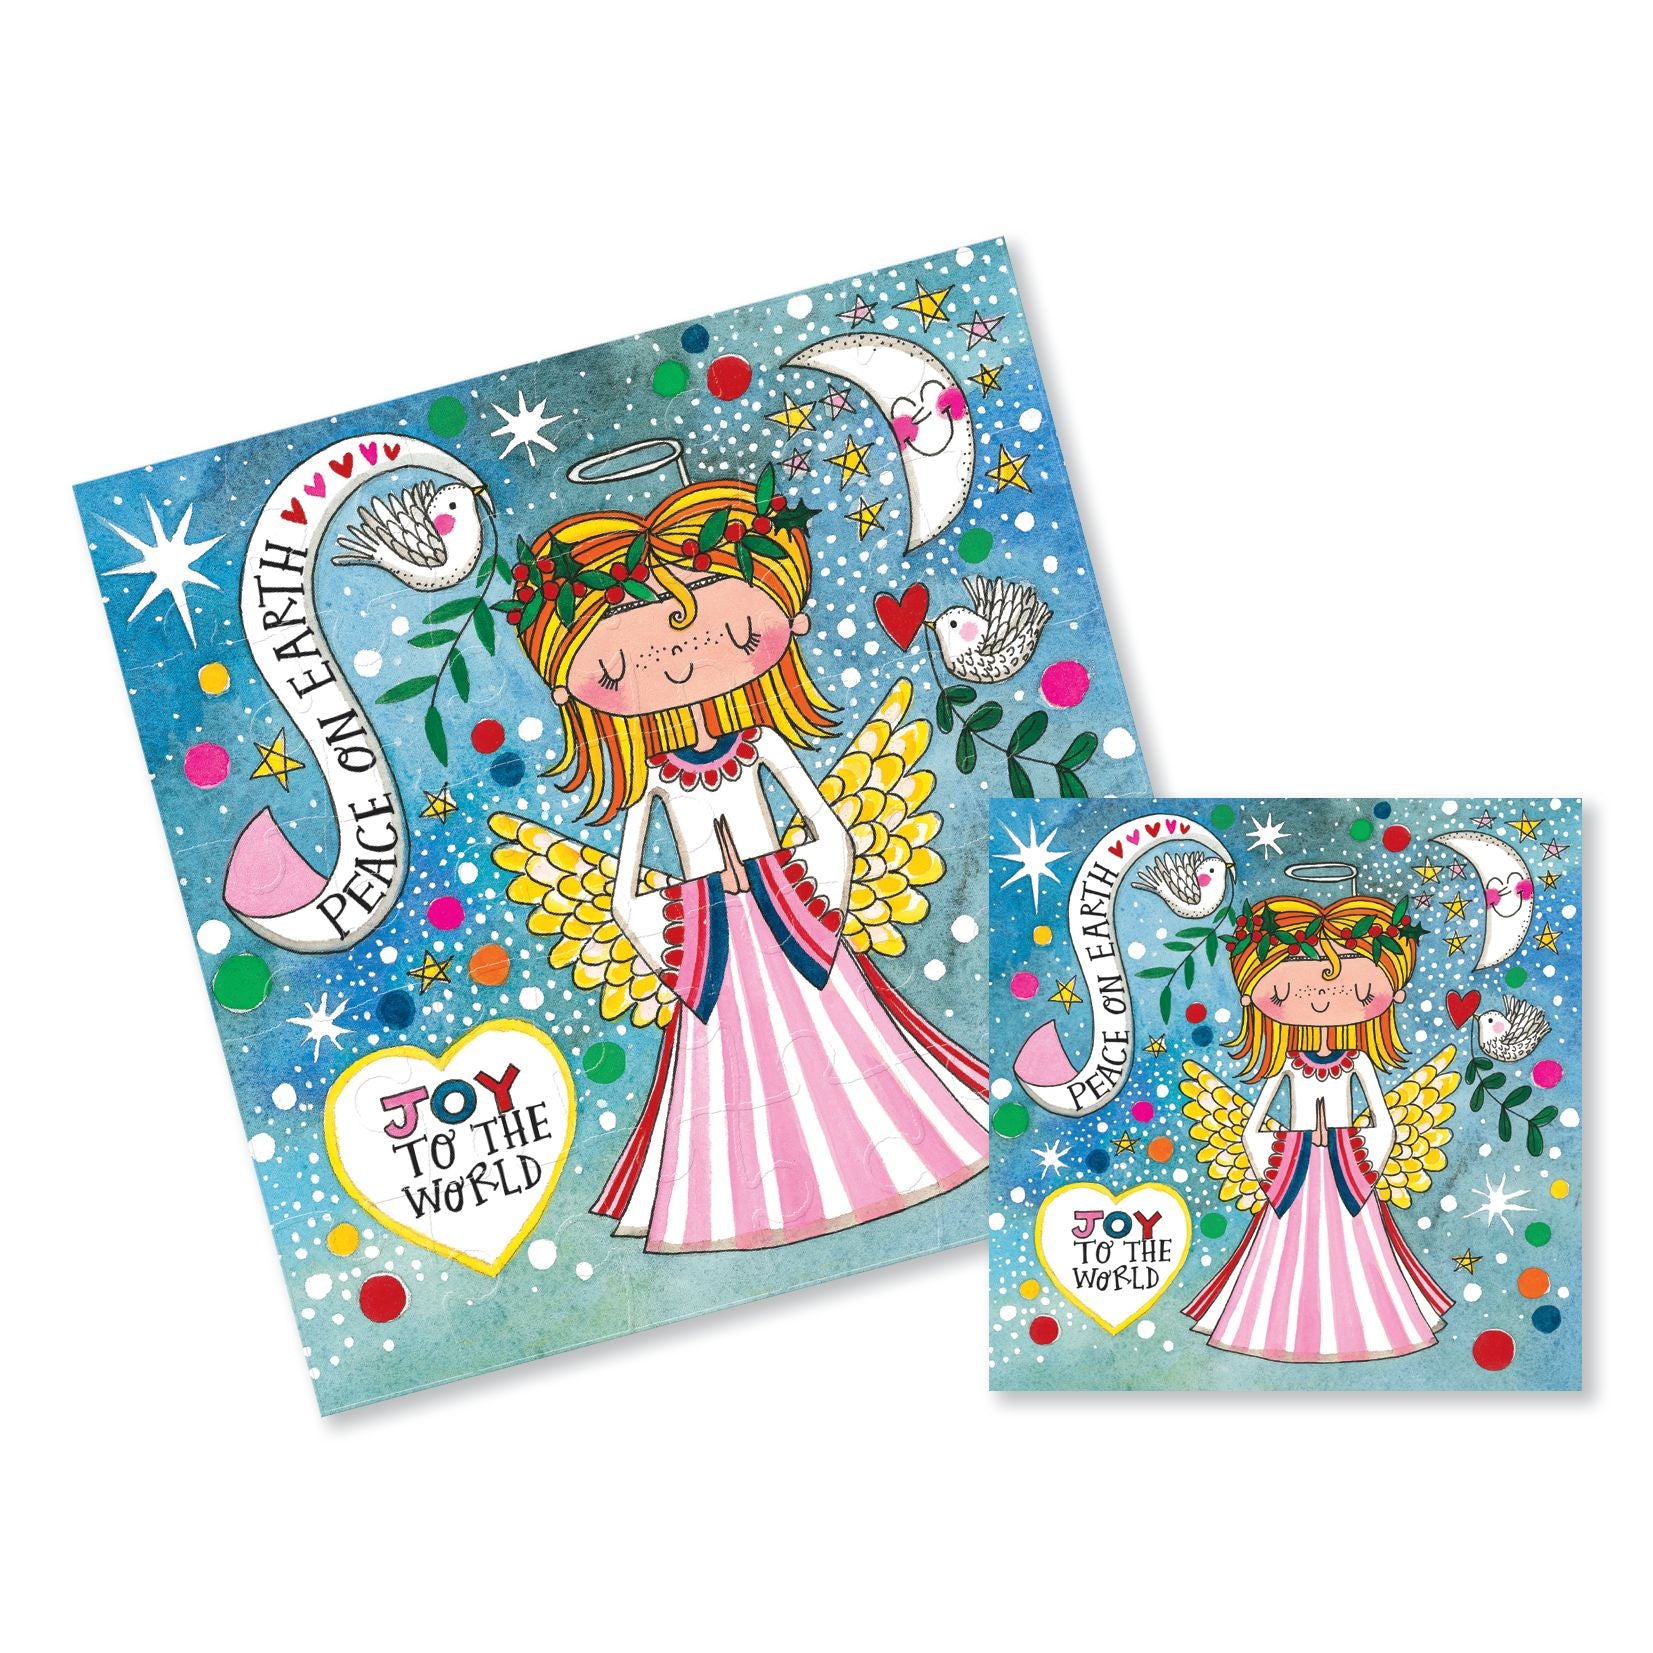 Christmas Jigsaw Card - Peach On Earth Joy To The World